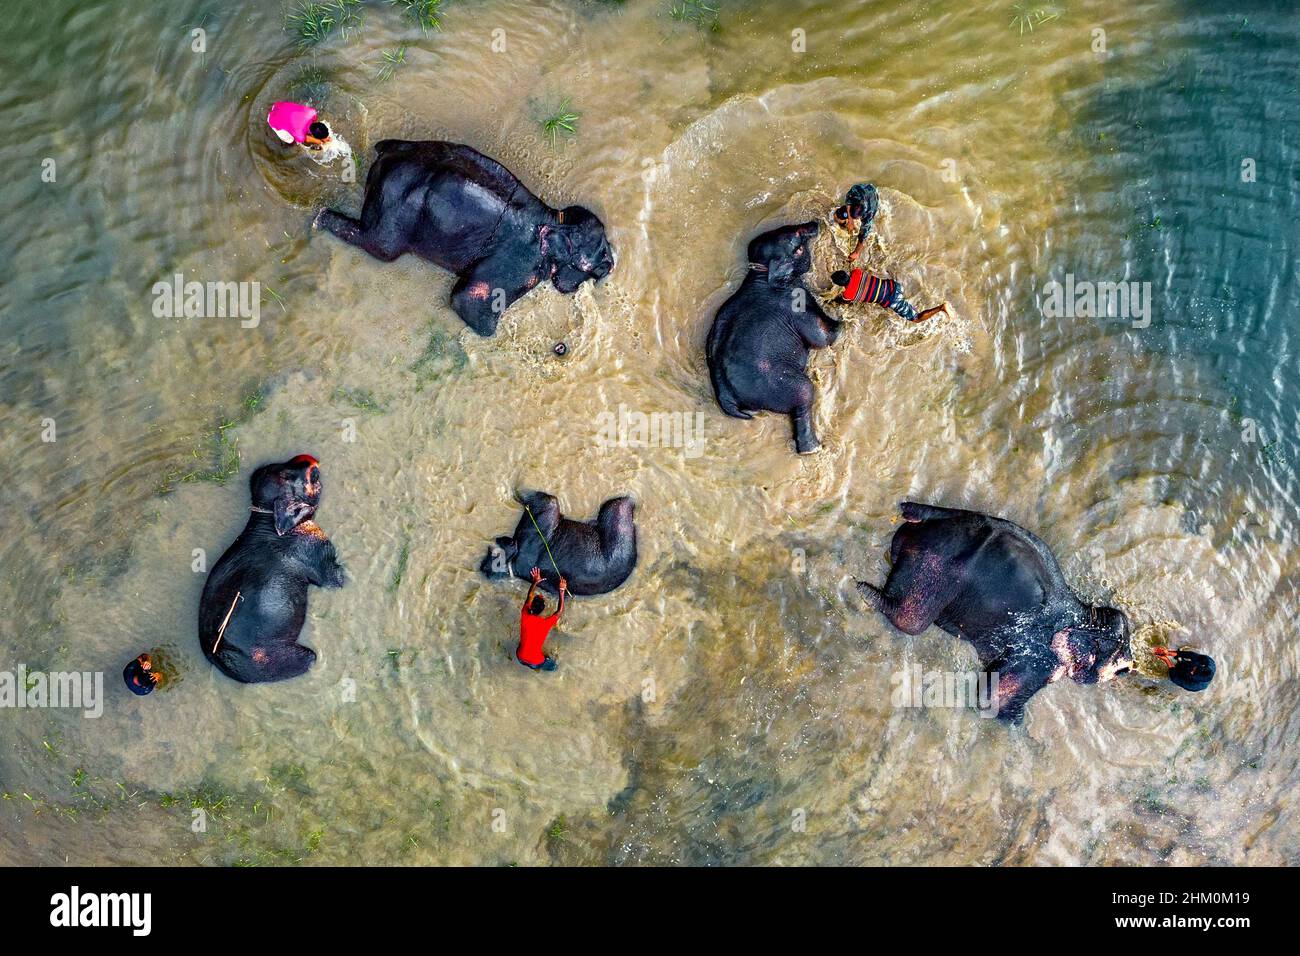 Los elefantes del circo se bañan en aguas turbias del río Foto de stock